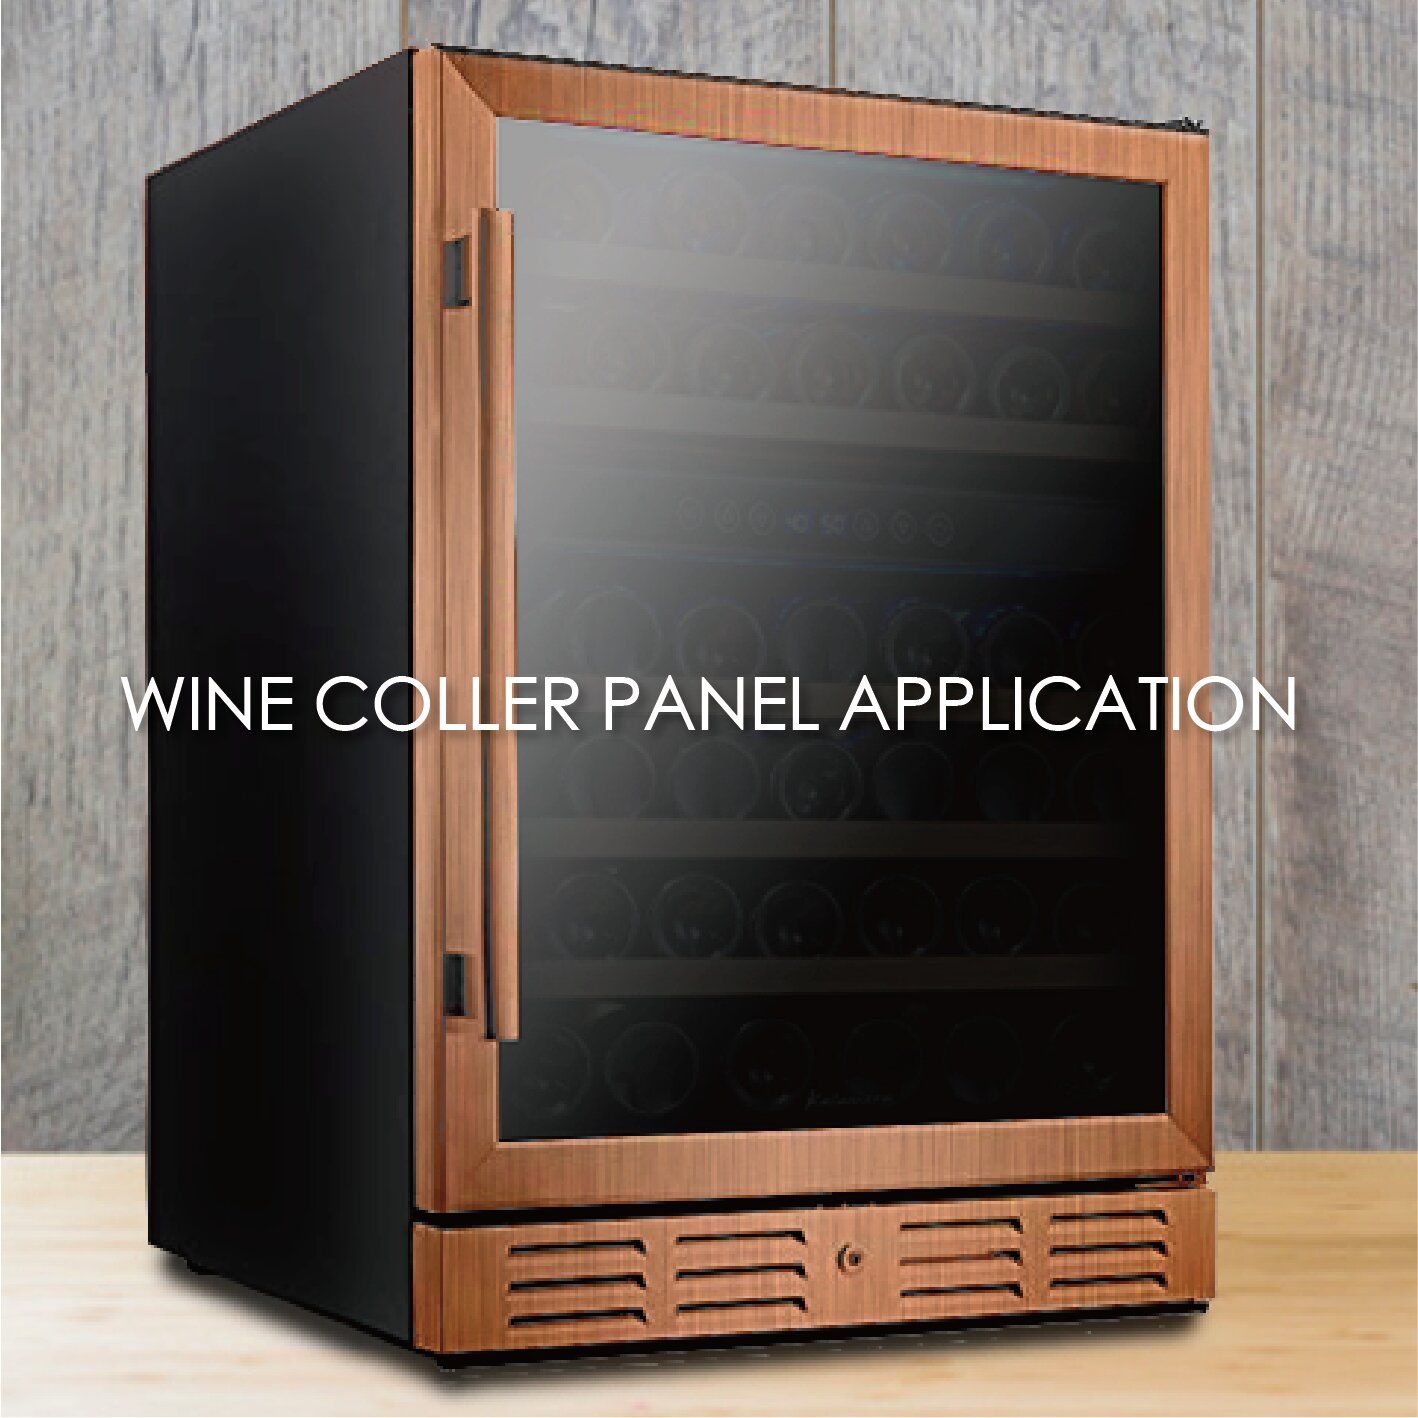 L'utilizzo di metallo rivestito con grana del legno per realizzare i pannelli del refrigeratore di vino può aumentare l'estetica e la durabilità